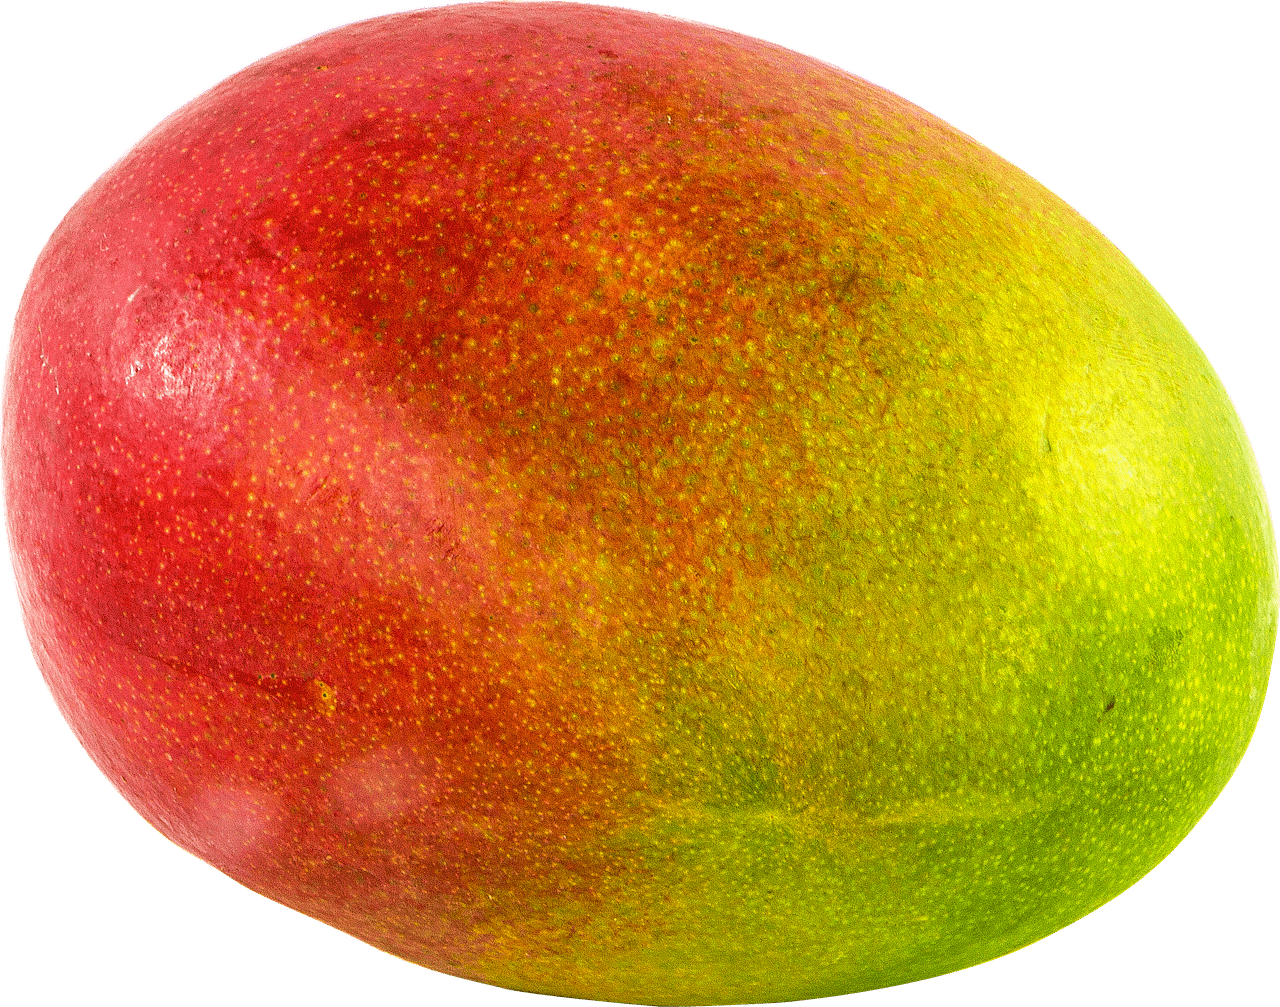 Fruits - Mango Transparent Clipart (1280x1007), Png Download